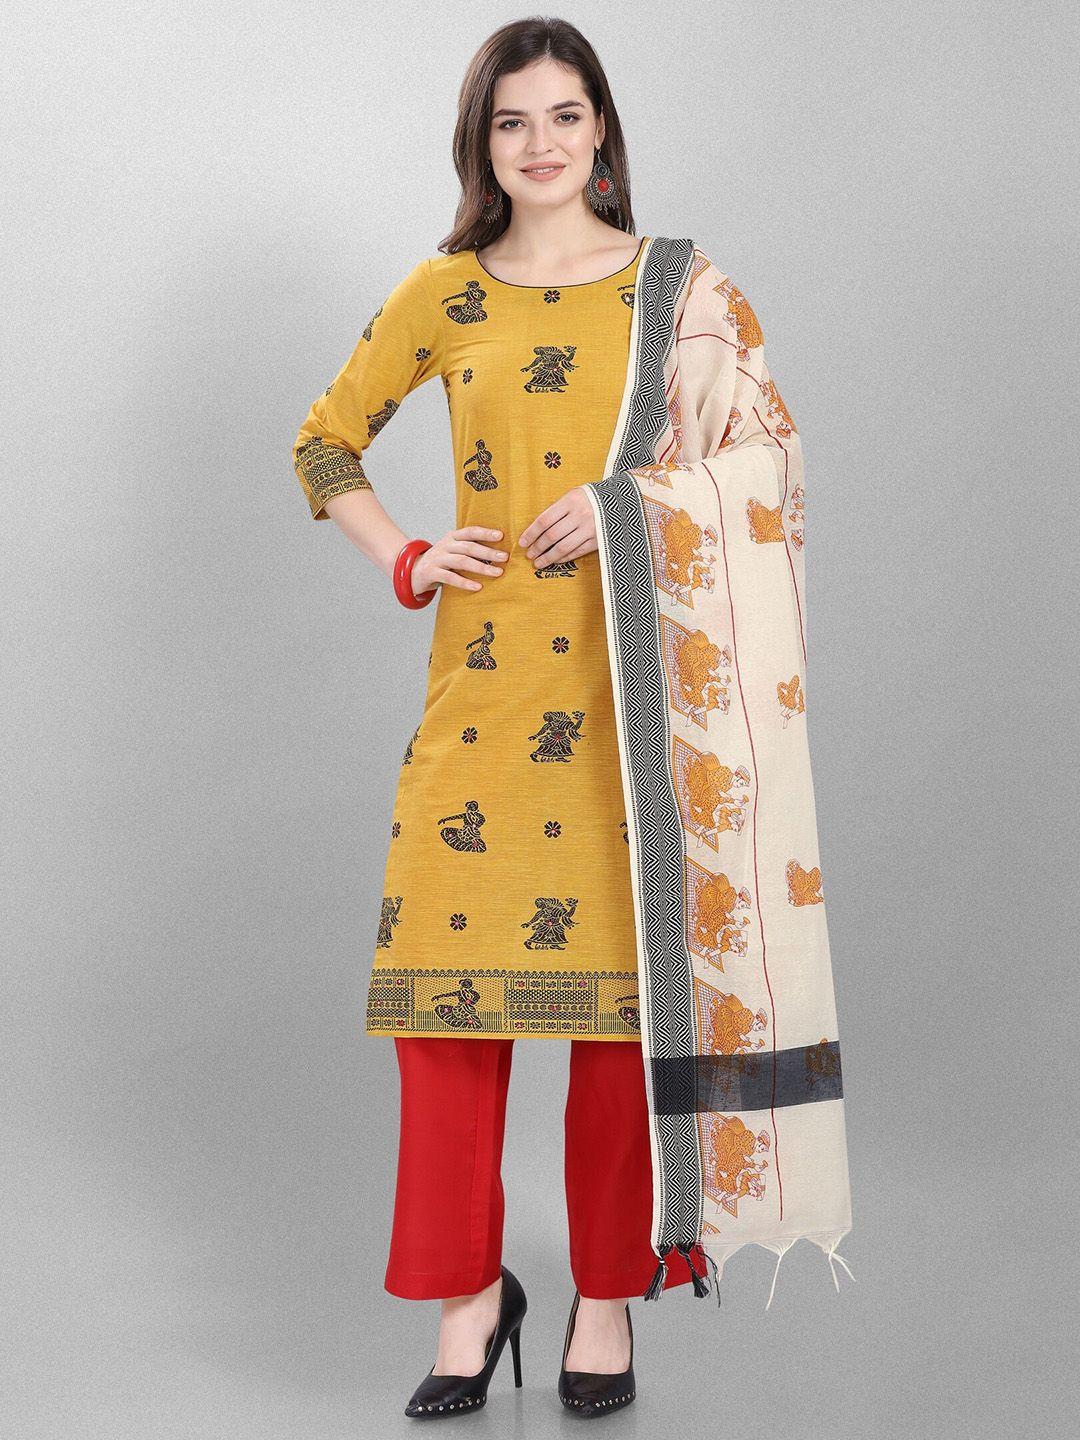 jevi-prints-ethnic-motifs-woven-design-pure-cotton-unstitched-dress-material